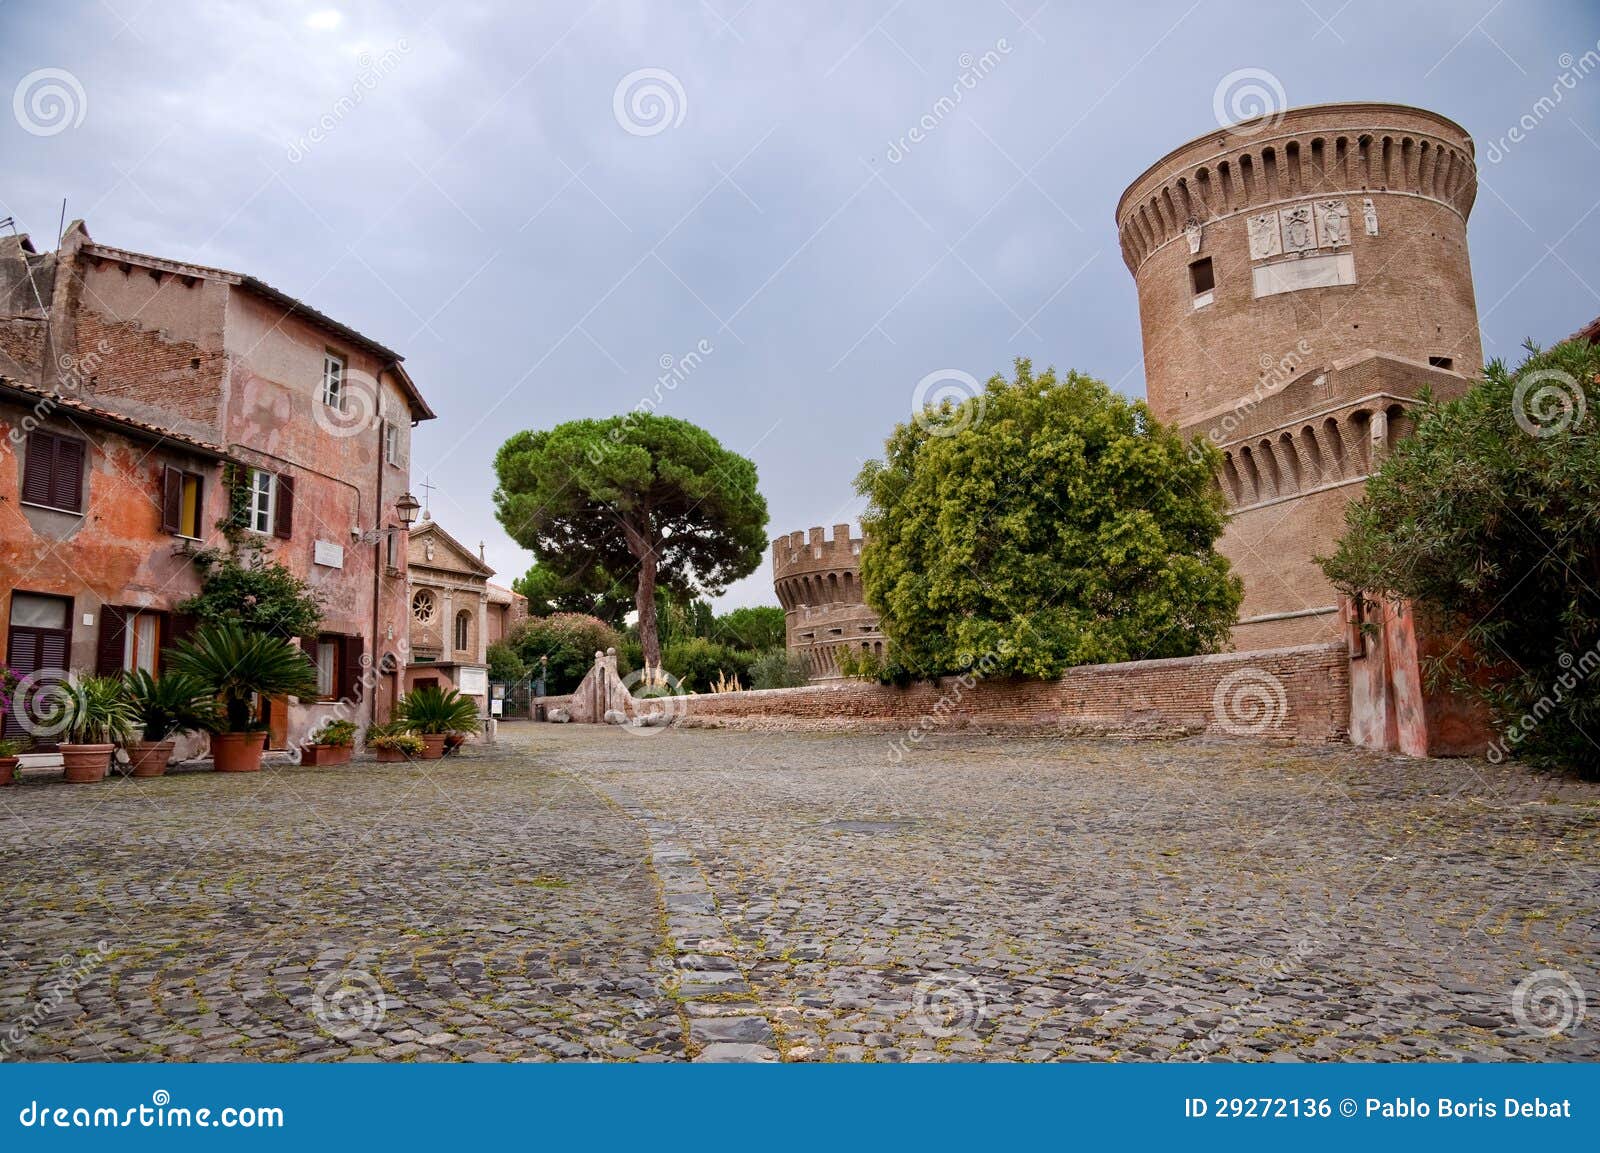 borgo di ostia antica and castello di giulio ii at rome